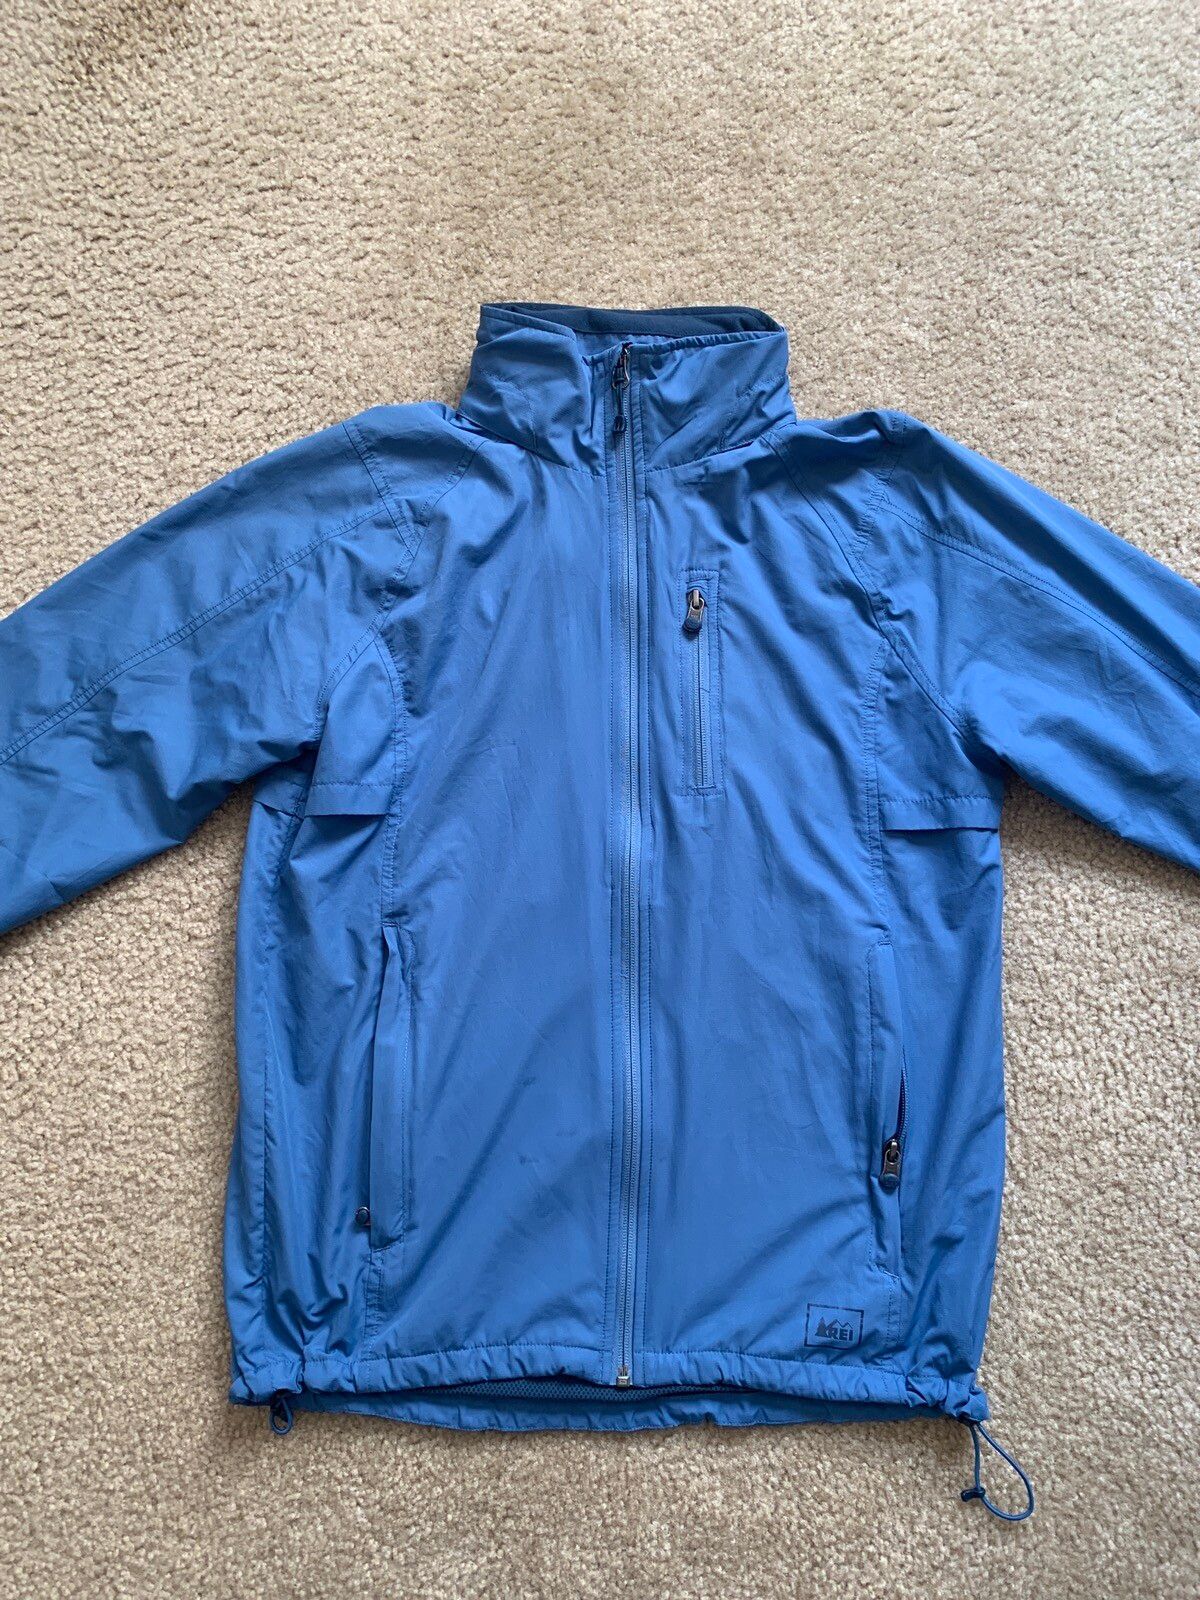 Rei Rei Raincoat Jacket (Blue) Size US S / EU 44-46 / 1 - 1 Preview